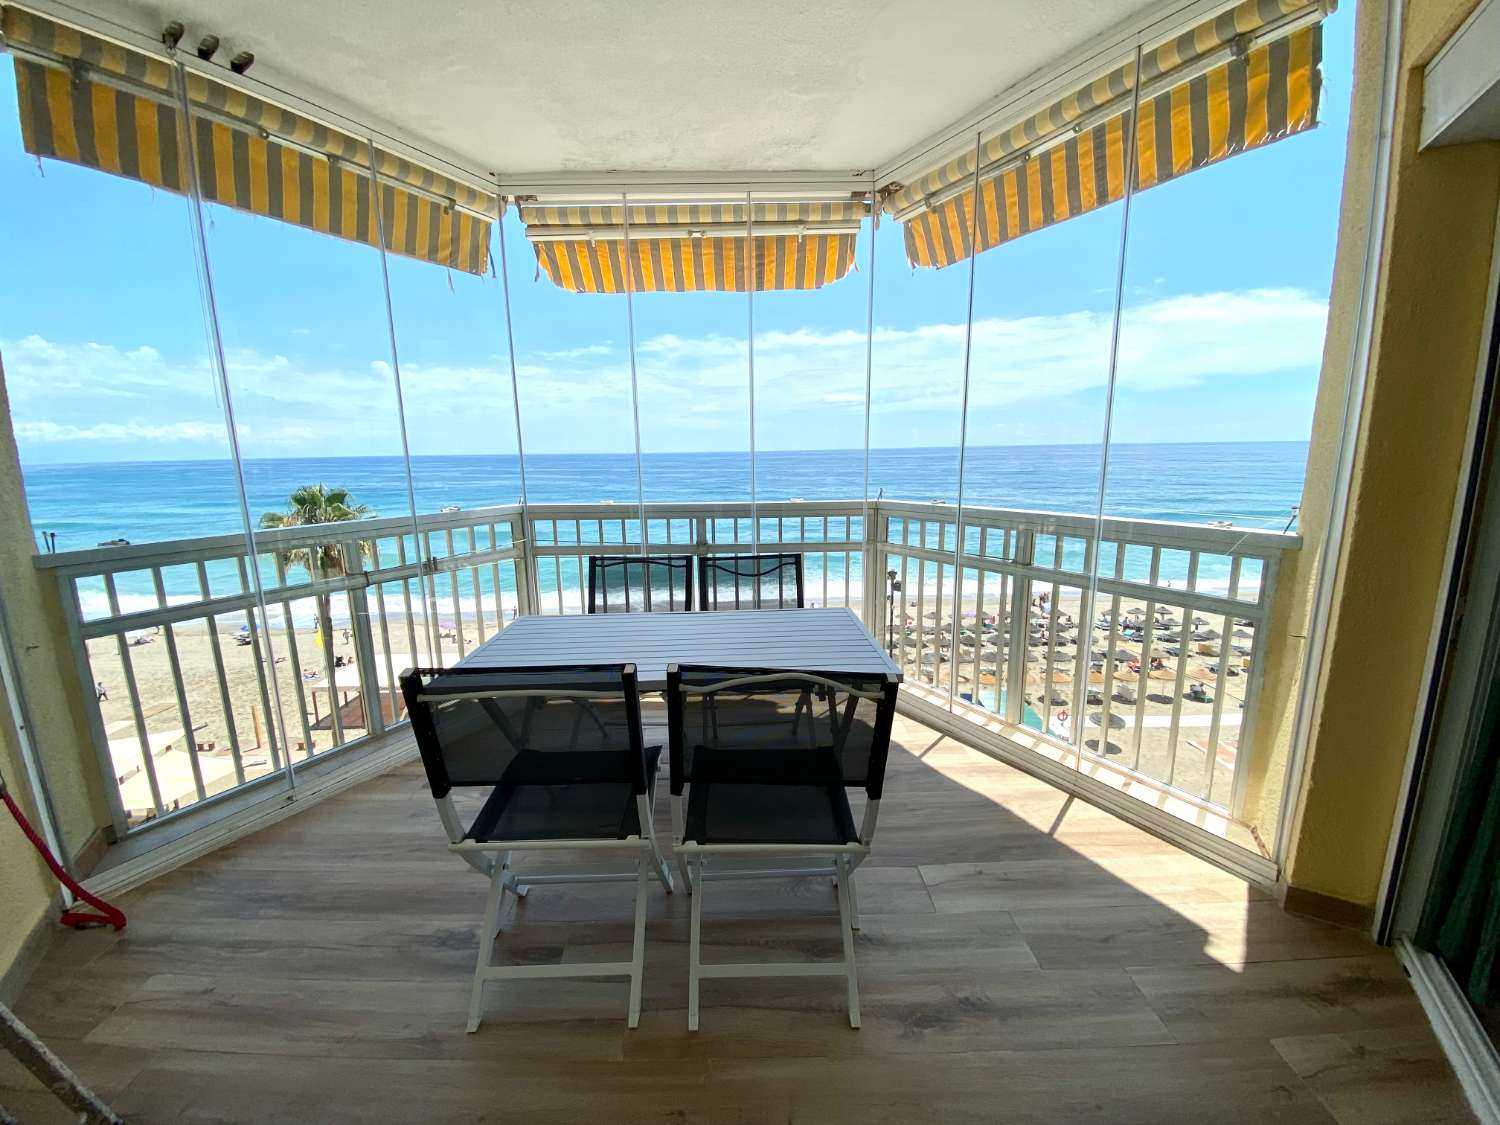 Unglaublich renovierte Wohnung mit Panoramablick auf das Meer: Das perfekte Zuhause für Strandliebhaber!“